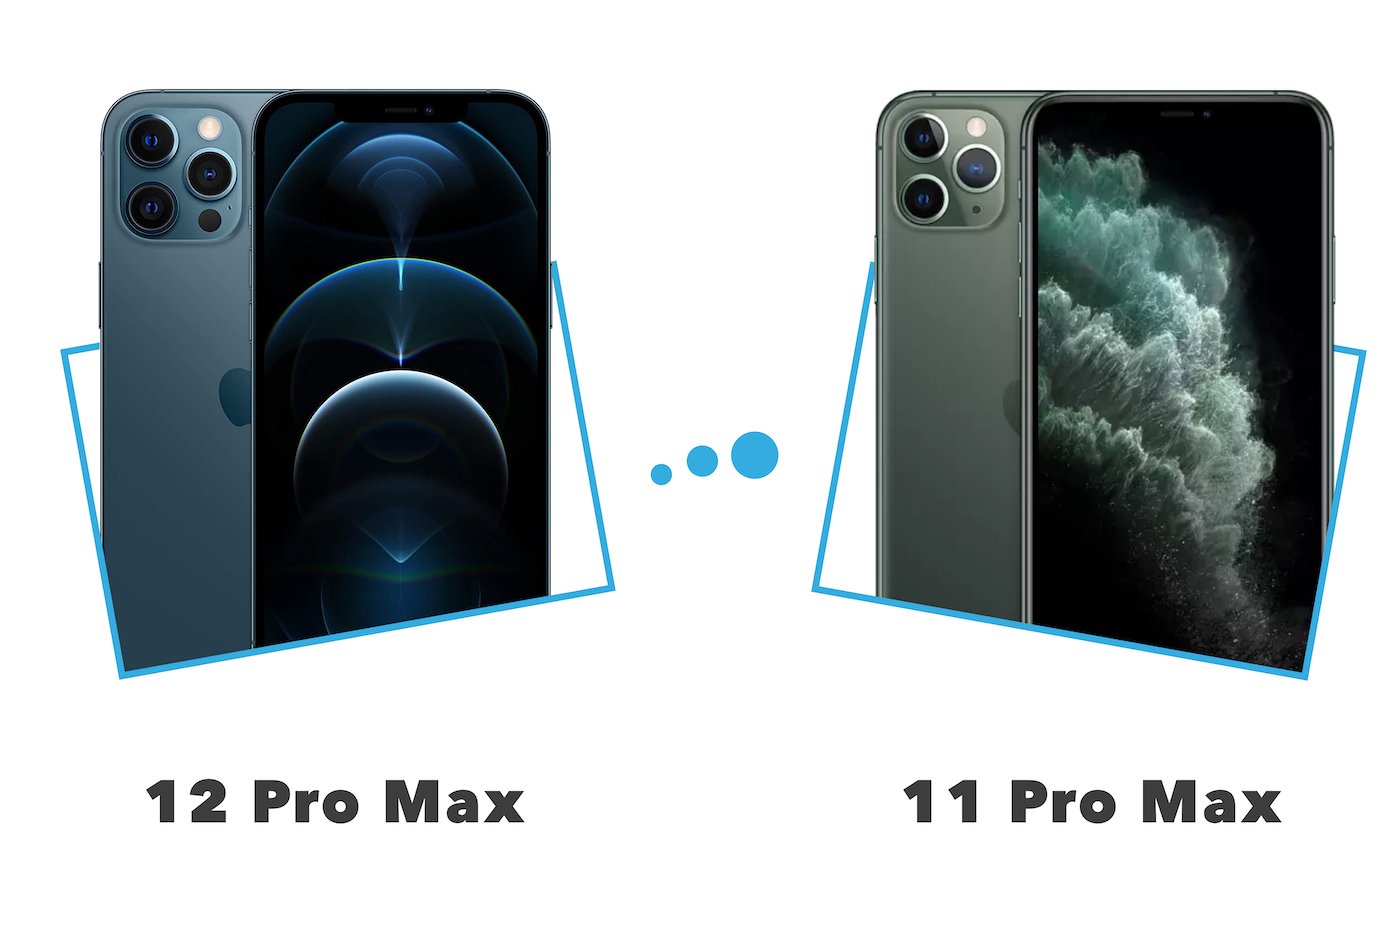 https://www.iphon.fr/app/uploads/2020/12/iphone-12-pro-max-versus-11-pro-max.jpg